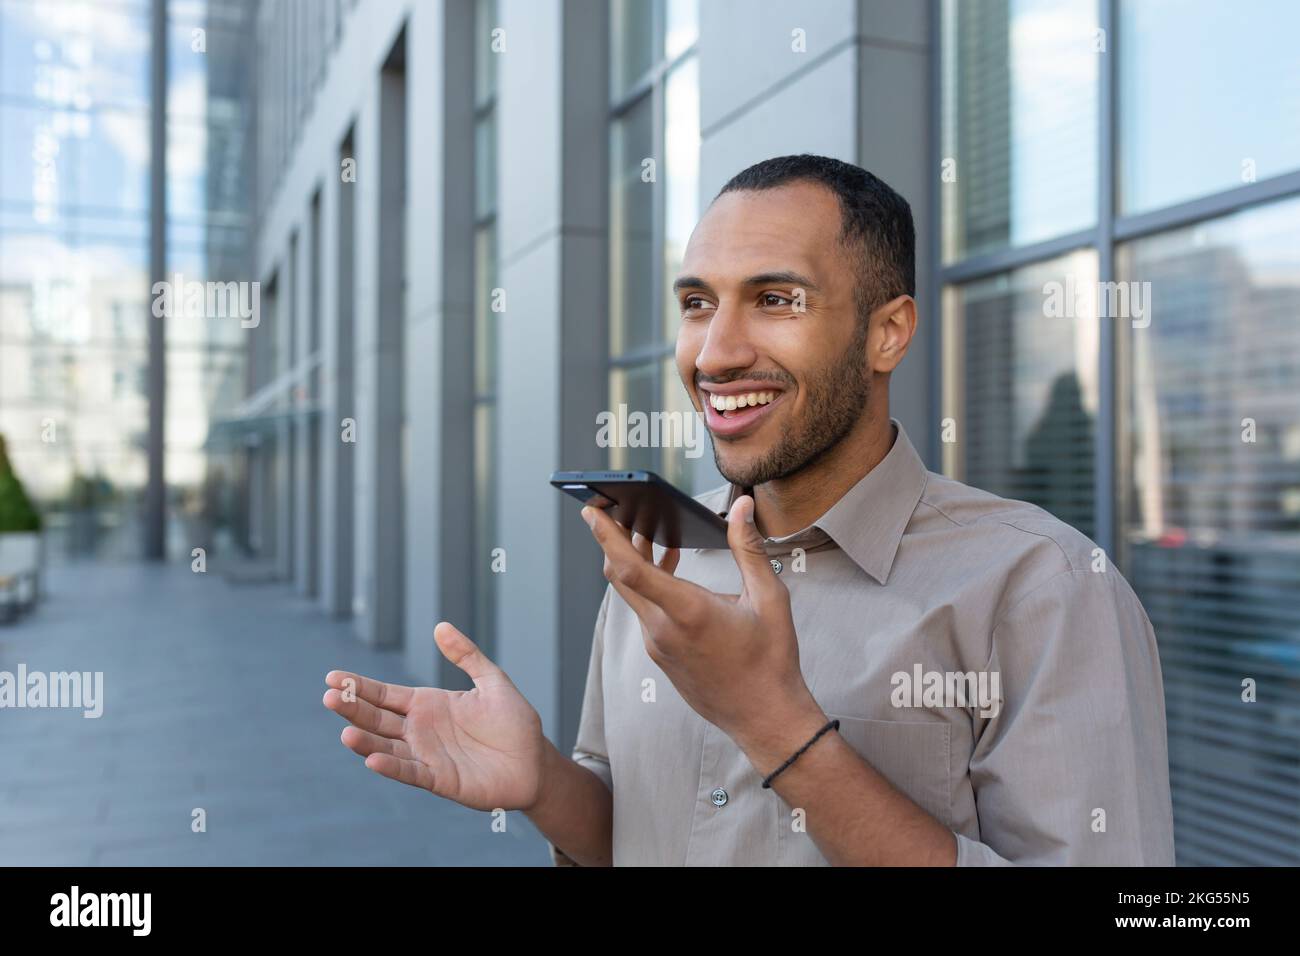 Ein junger gutaussehender Mann, hispanic, afroamerikaner, der draußen steht, das Telefon hält, über Lautsprecher spricht, am Telefon aufnimmt, lächelt. Stockfoto